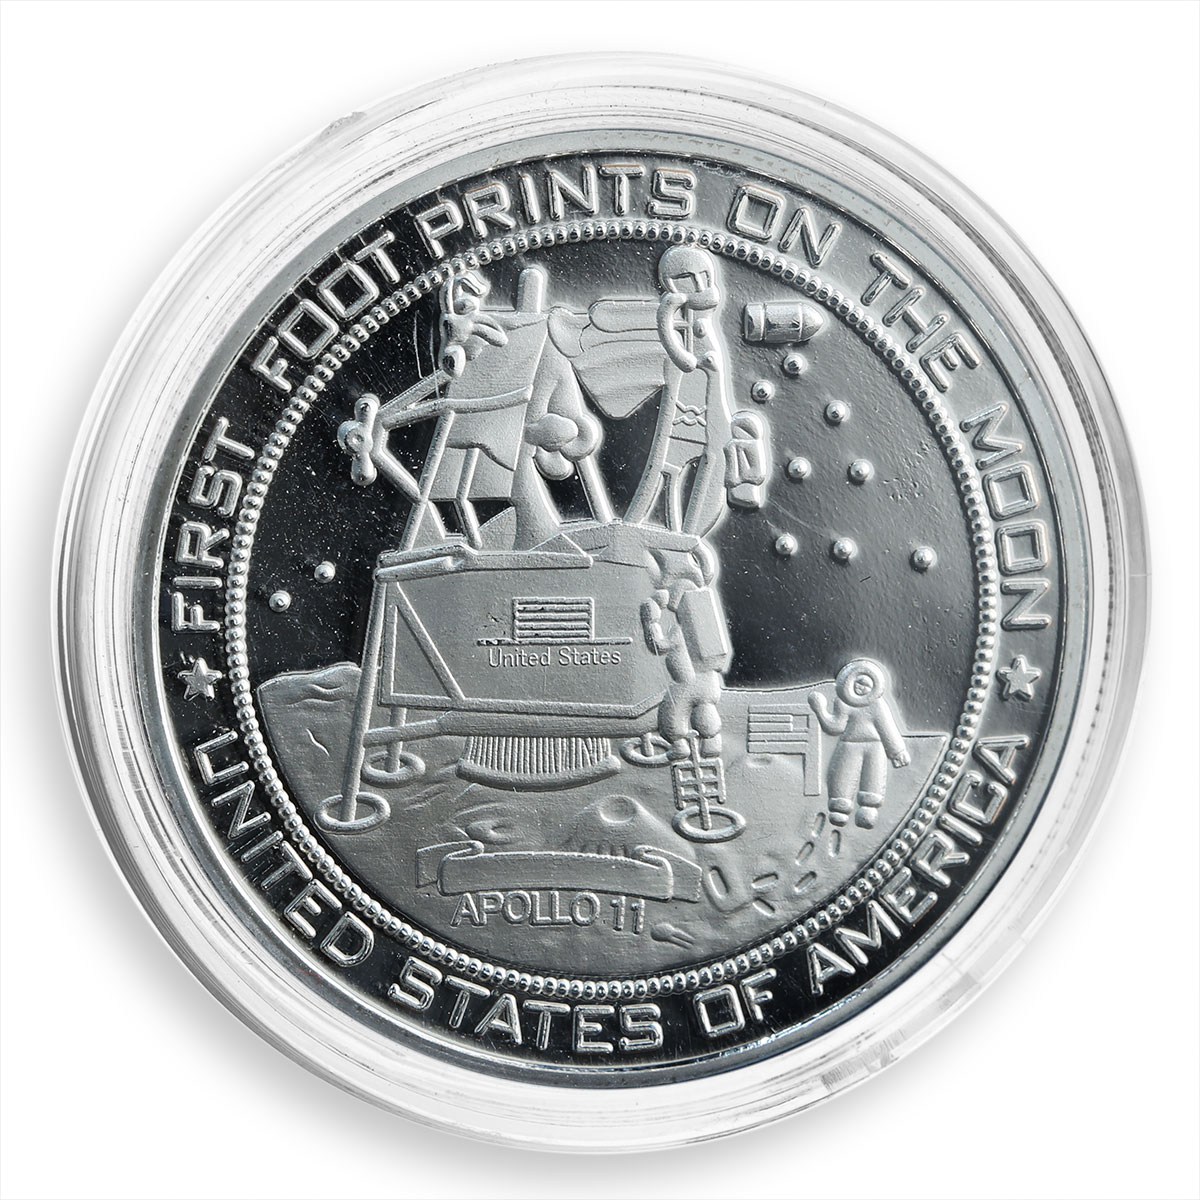 Moon Landing Silver Plated Coin, Apollo 11, Neil Armstrong, Space, NASA, Token